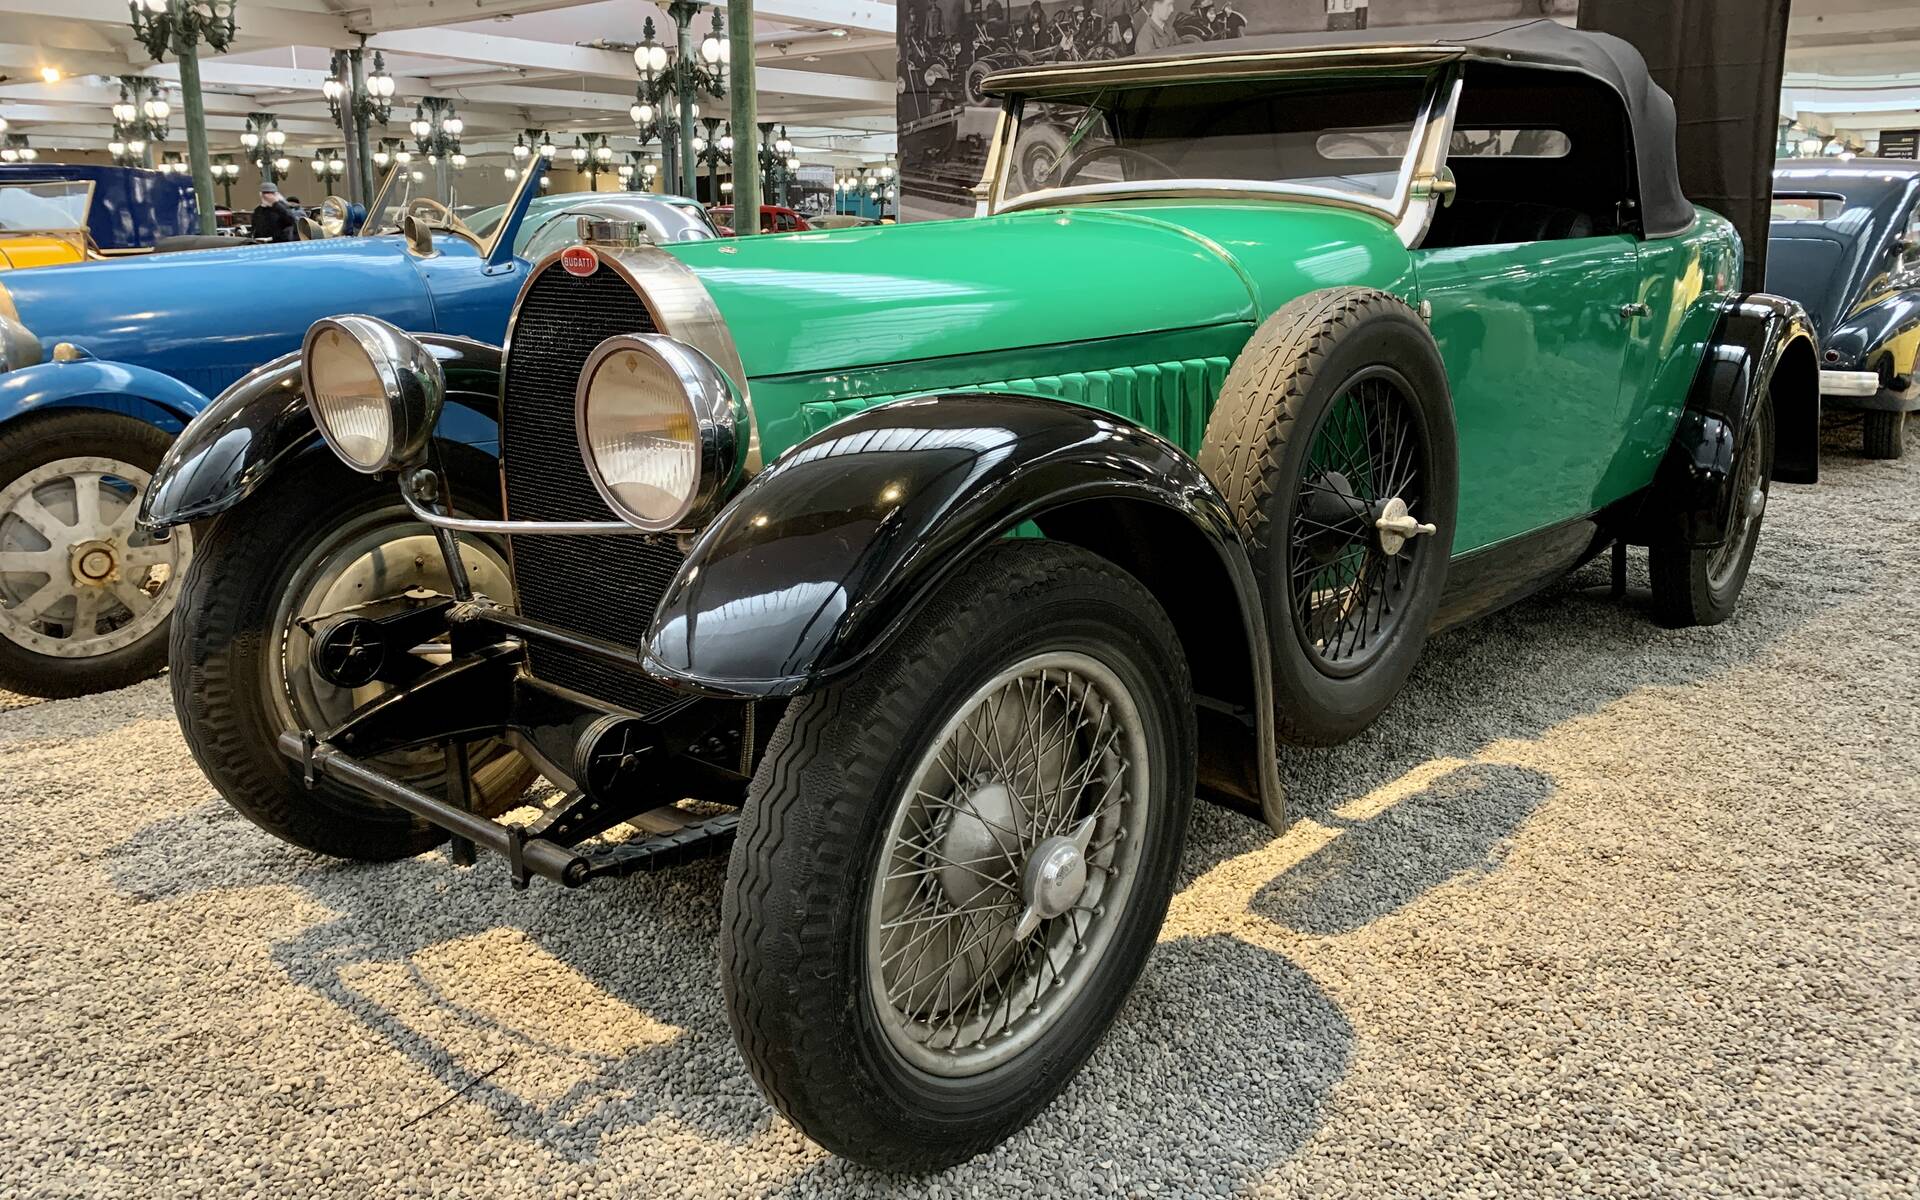 En photos : une centaine de Bugatti réunies dans un même musée 503049-en-photos-des-dizaines-de-bugatti-reunies-dans-un-meme-musee